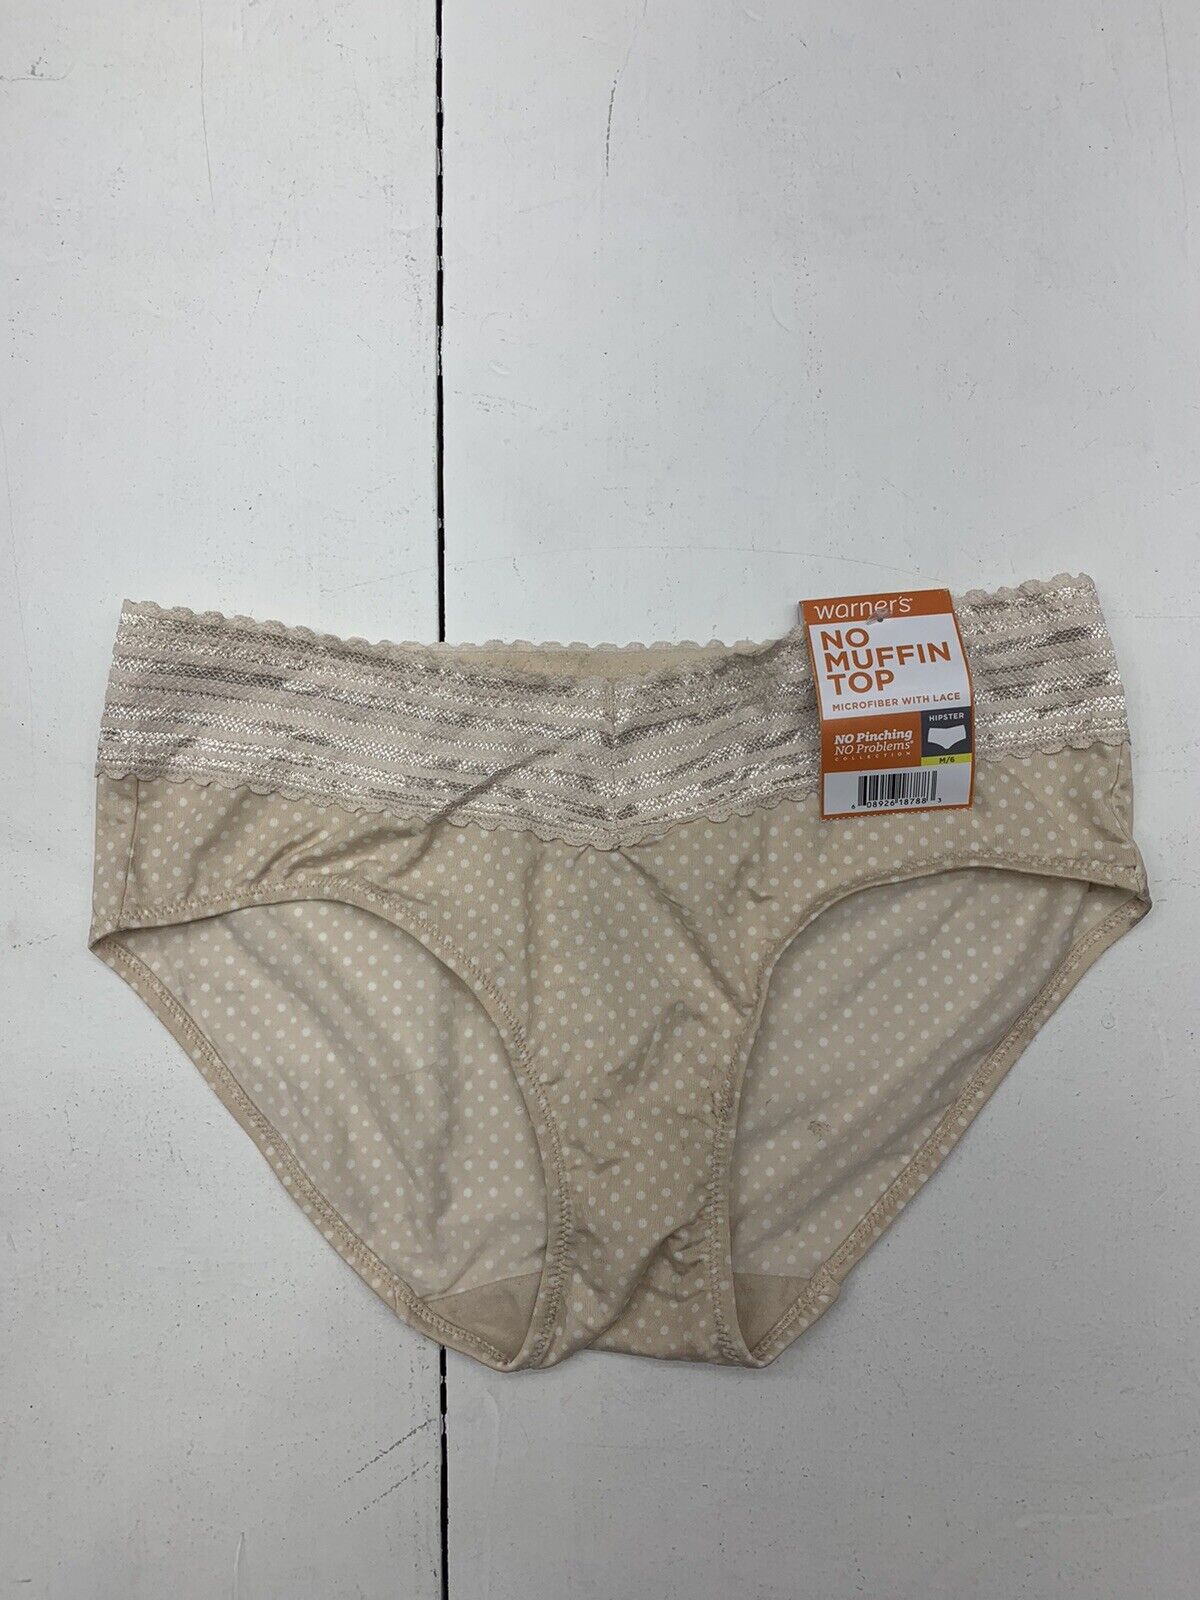 Warner's Panties and Warner's Underwear